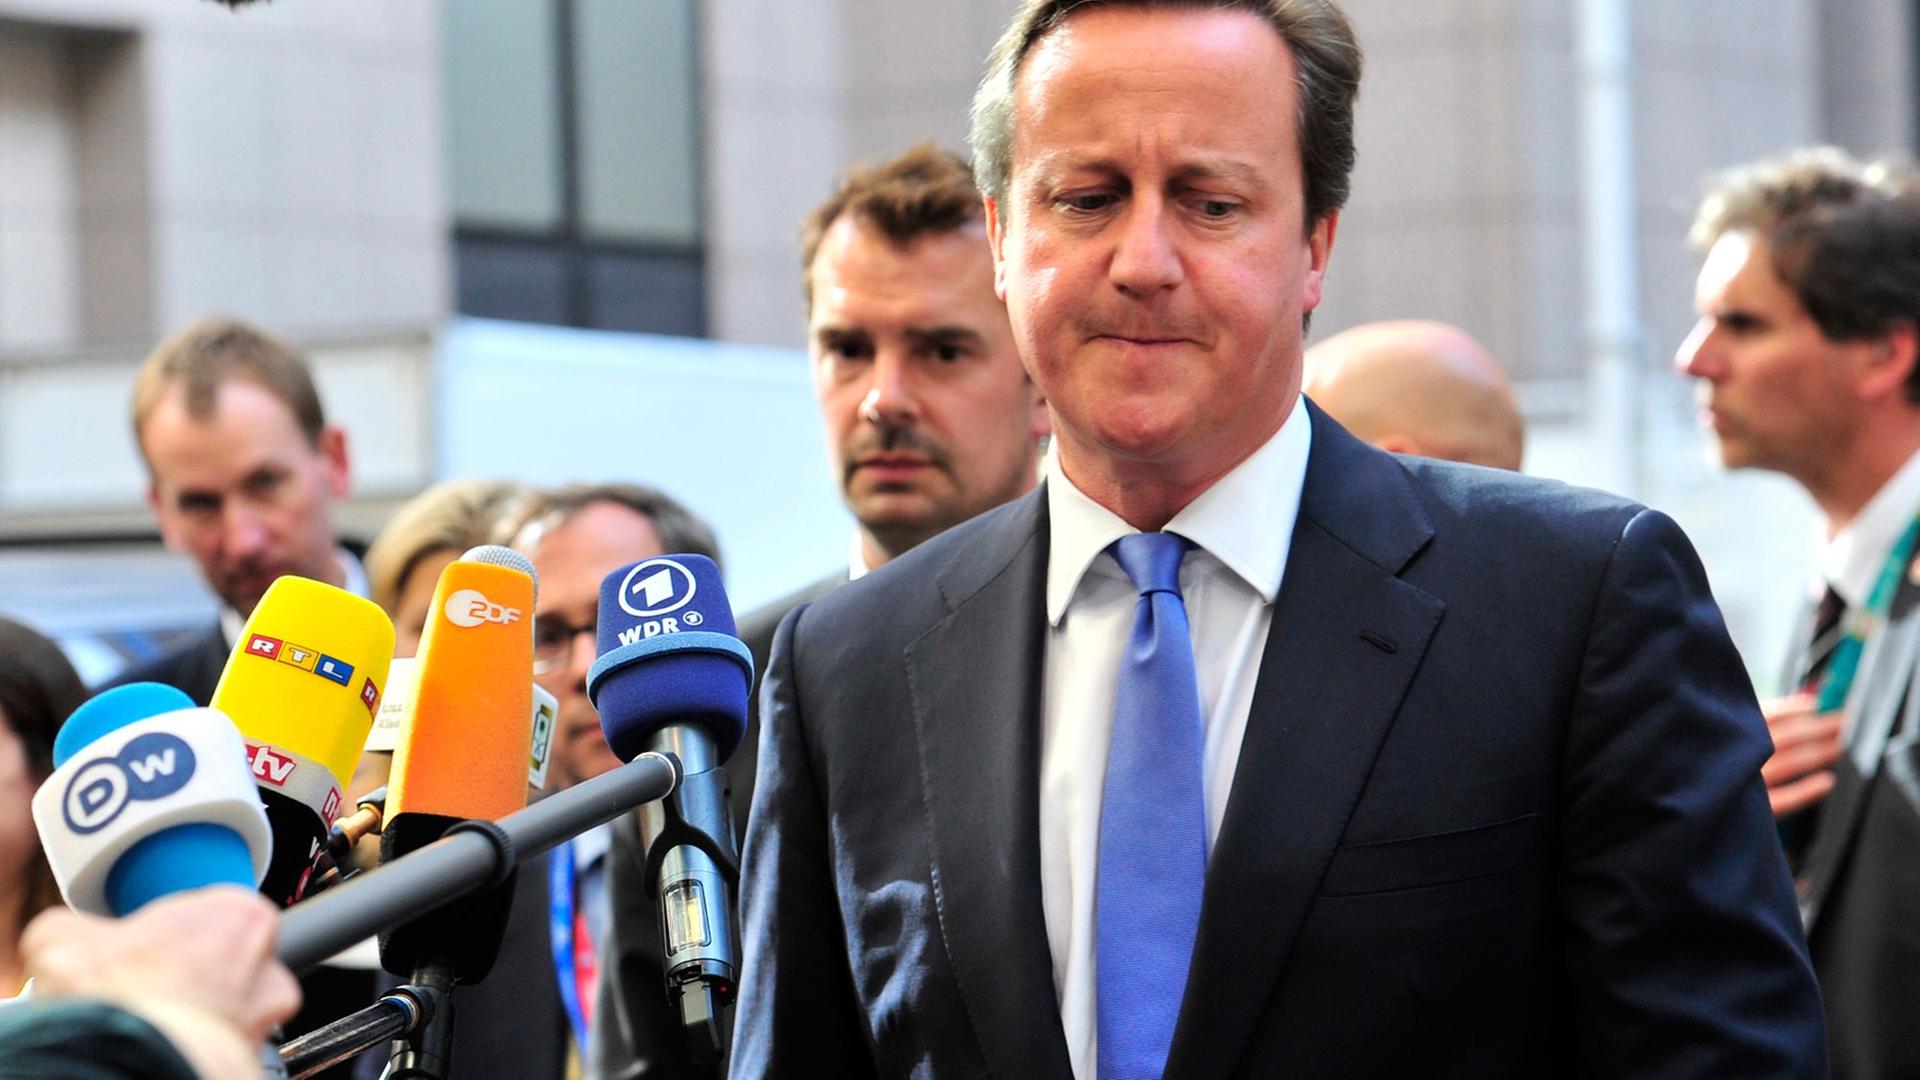 Der britische Premierminister David Cameron beim Gang in die Zentrale der Europäischen in Union in Brüssel, Pressevertreter halten ihm Mikrofone hin.